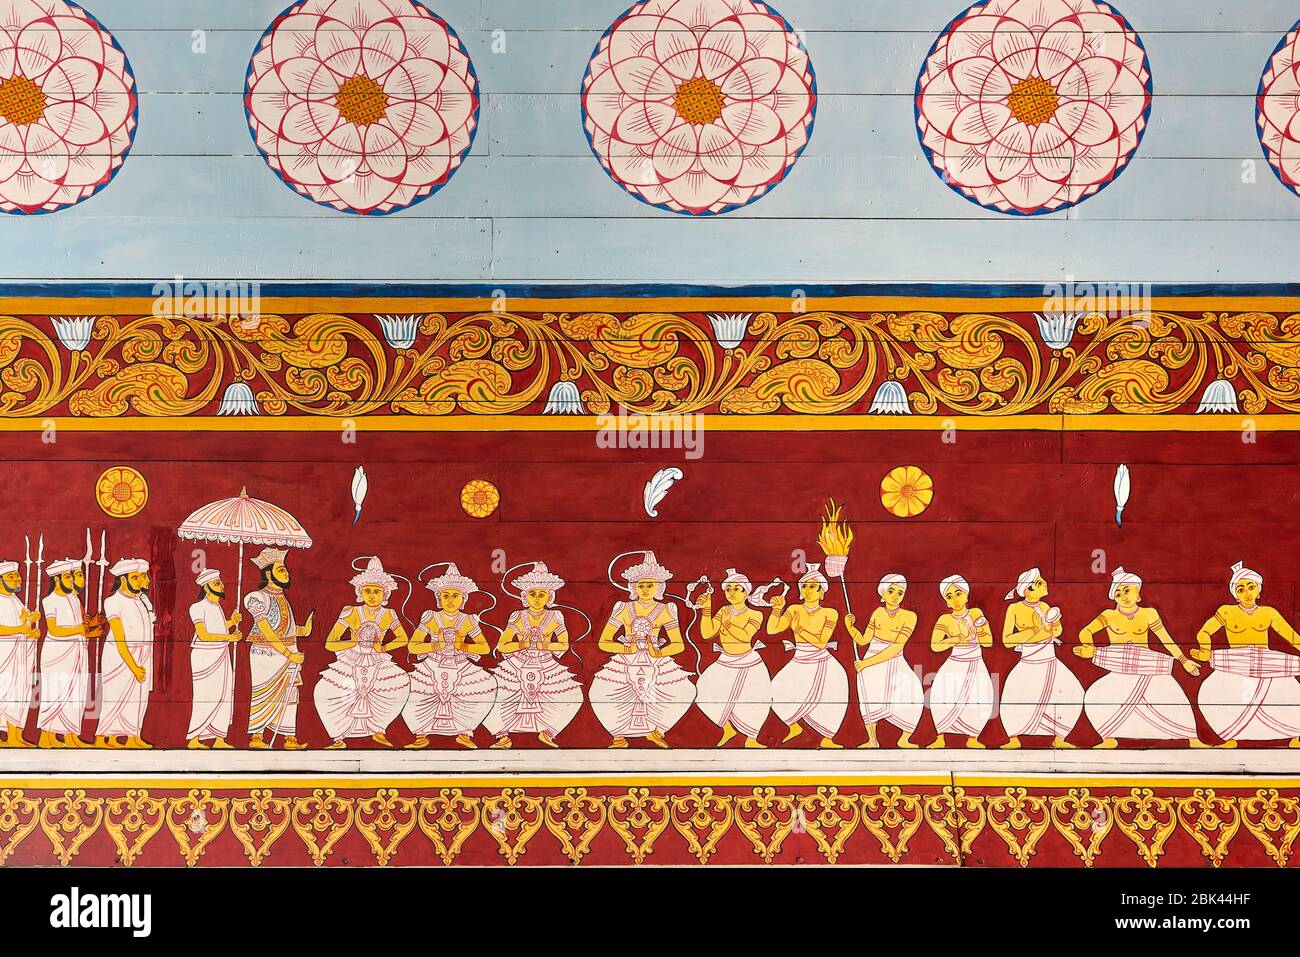 Des peintures colorées sur le mur au temple relique de la dent sacrée à Kandy, au Sri Lanka, illustrant des danseurs et des figures historiques, racontant l'histoire du t Banque D'Images